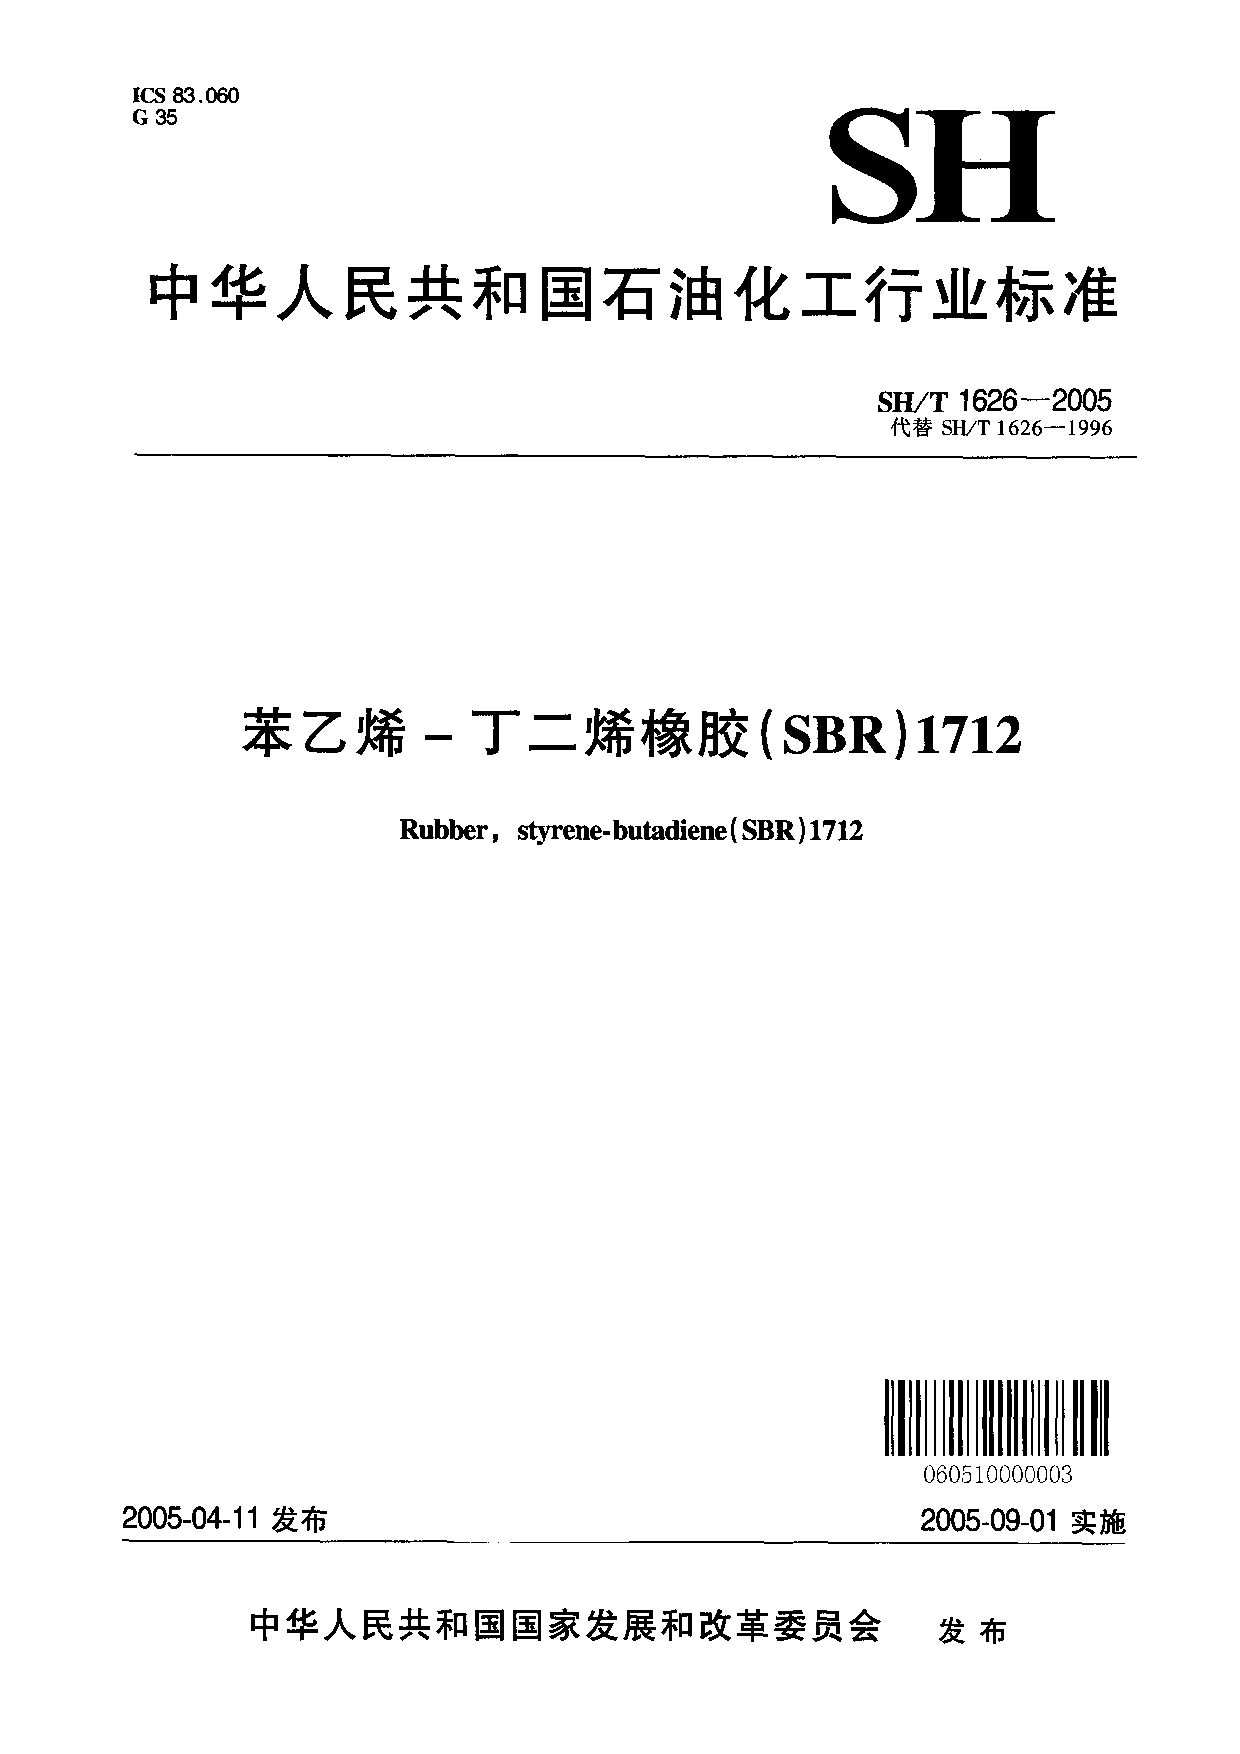 SH/T 1626-2005